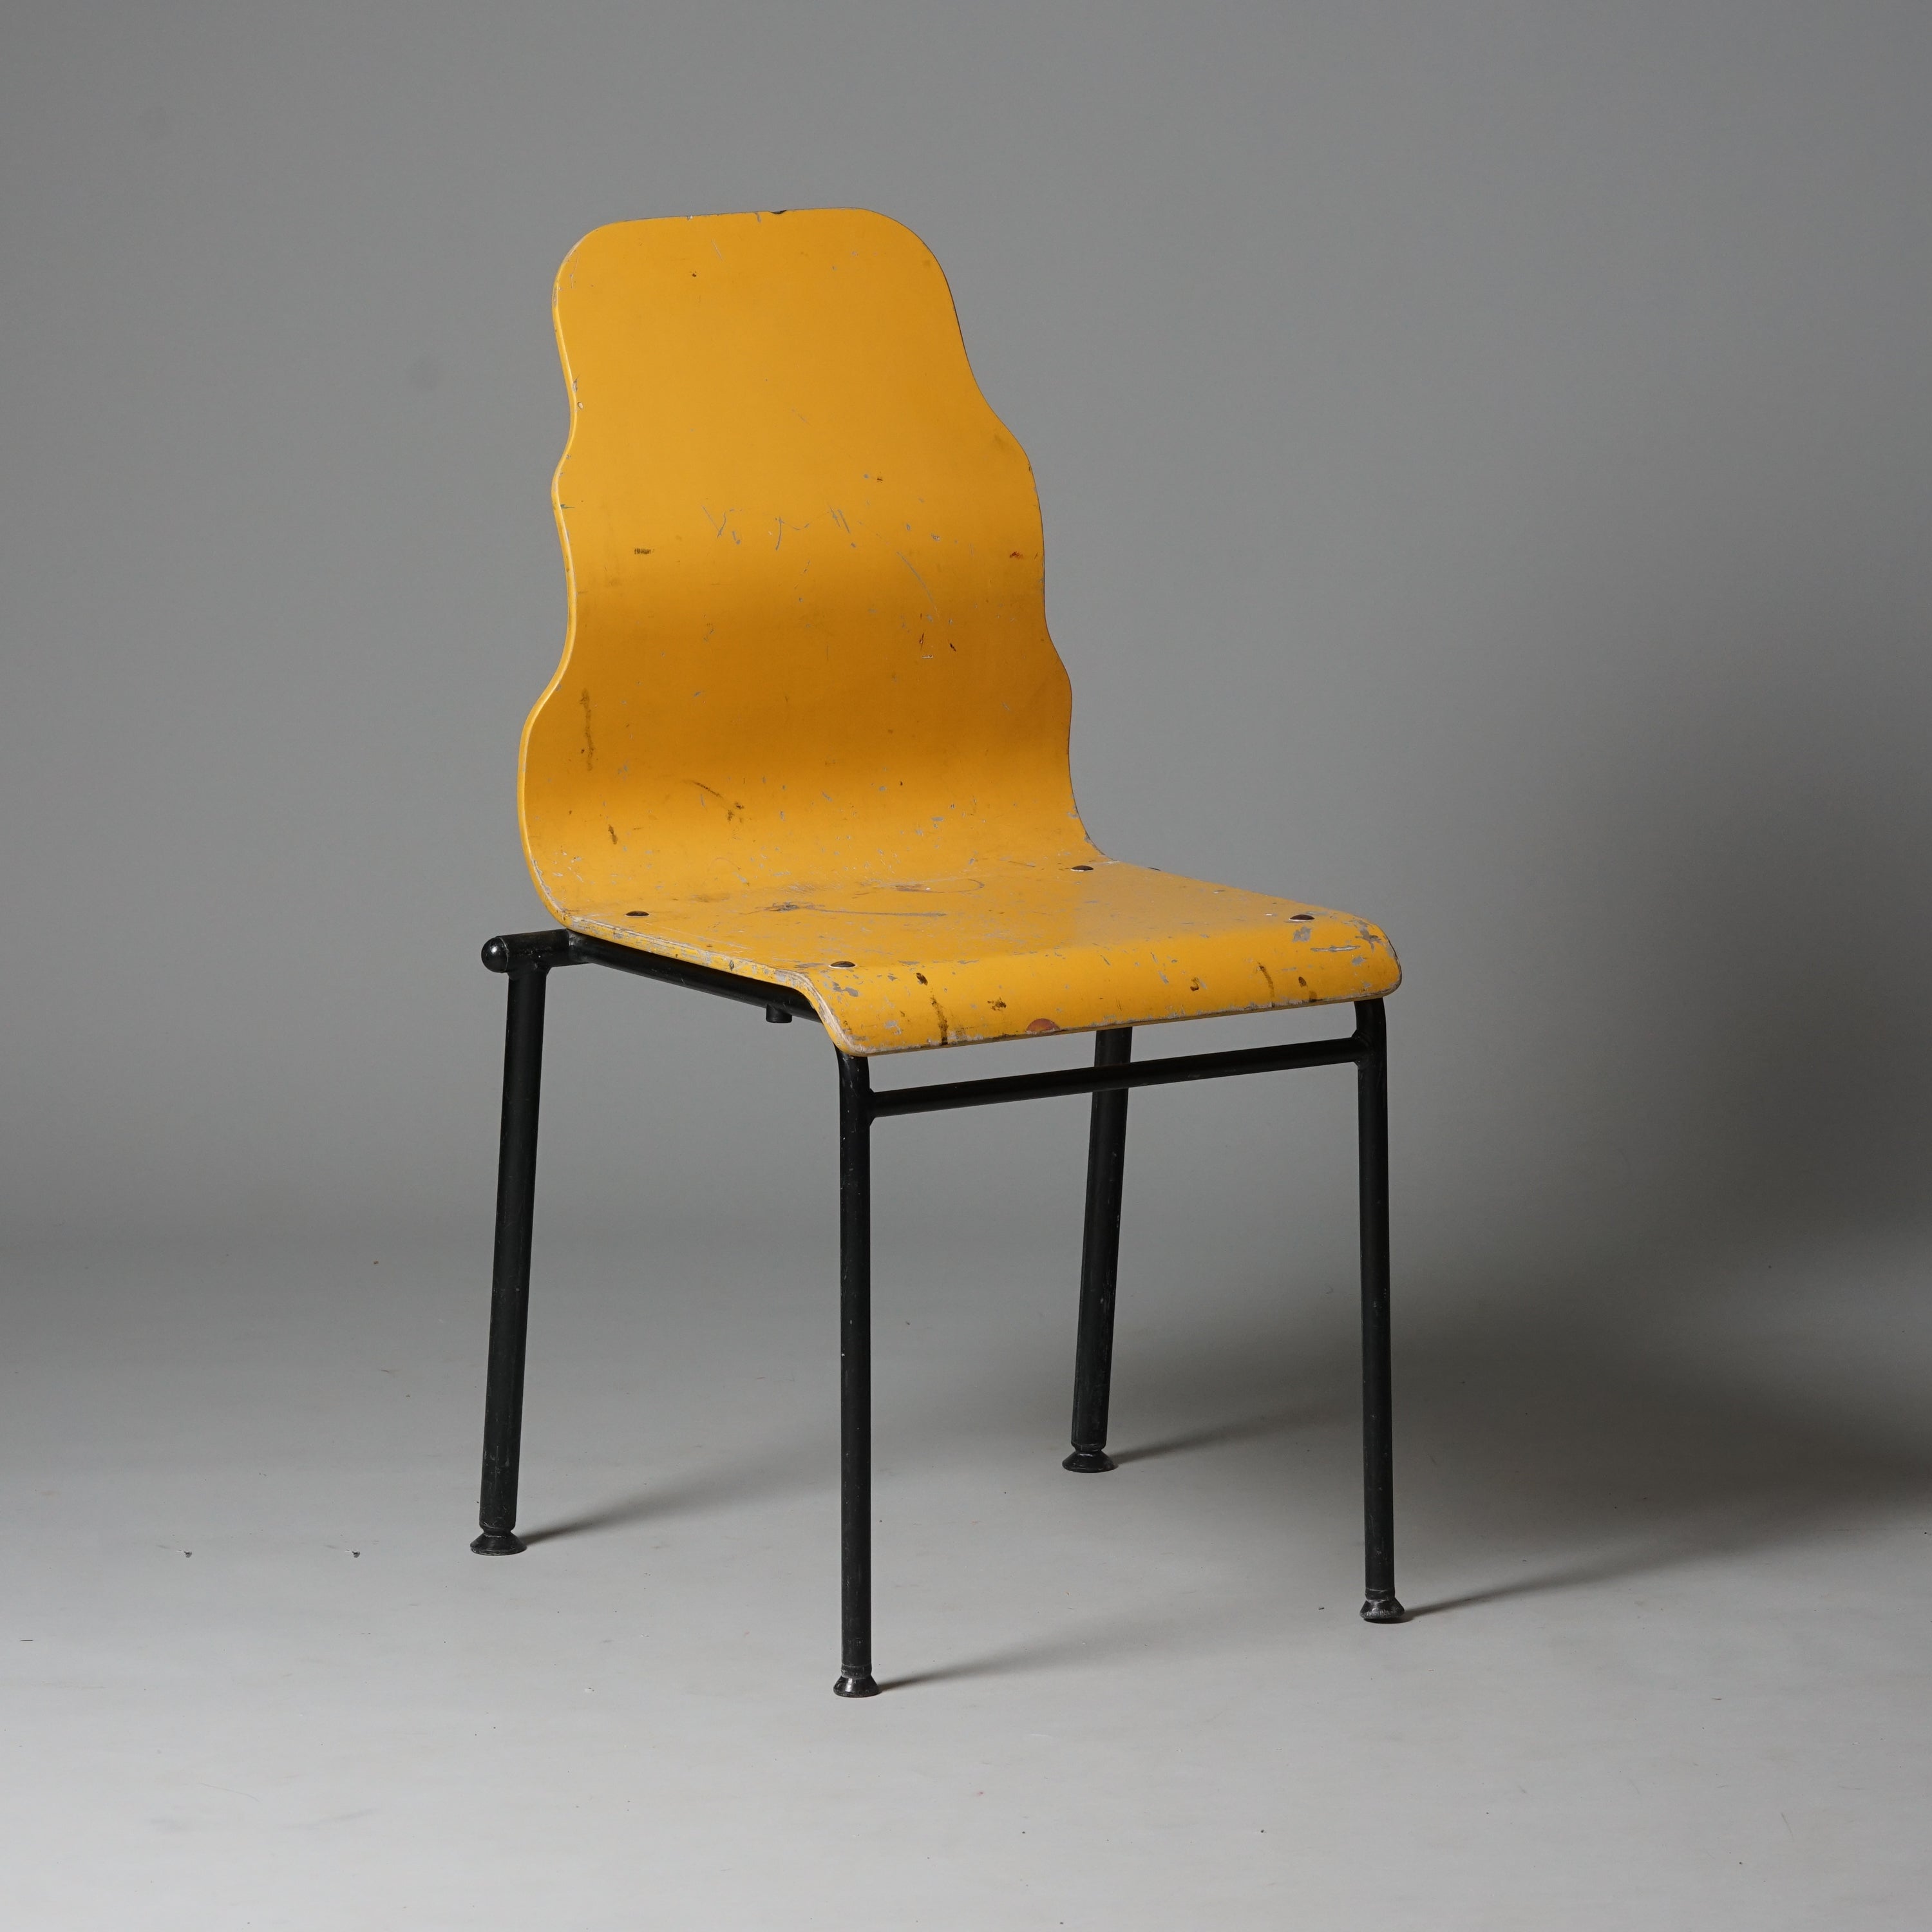 Tuoli on tehty puusta ja jalat metallista. Istuimen selkänojan muoto on aaltomainen. Väriltään istuin on keltainen ja tuolin jalat mustat.